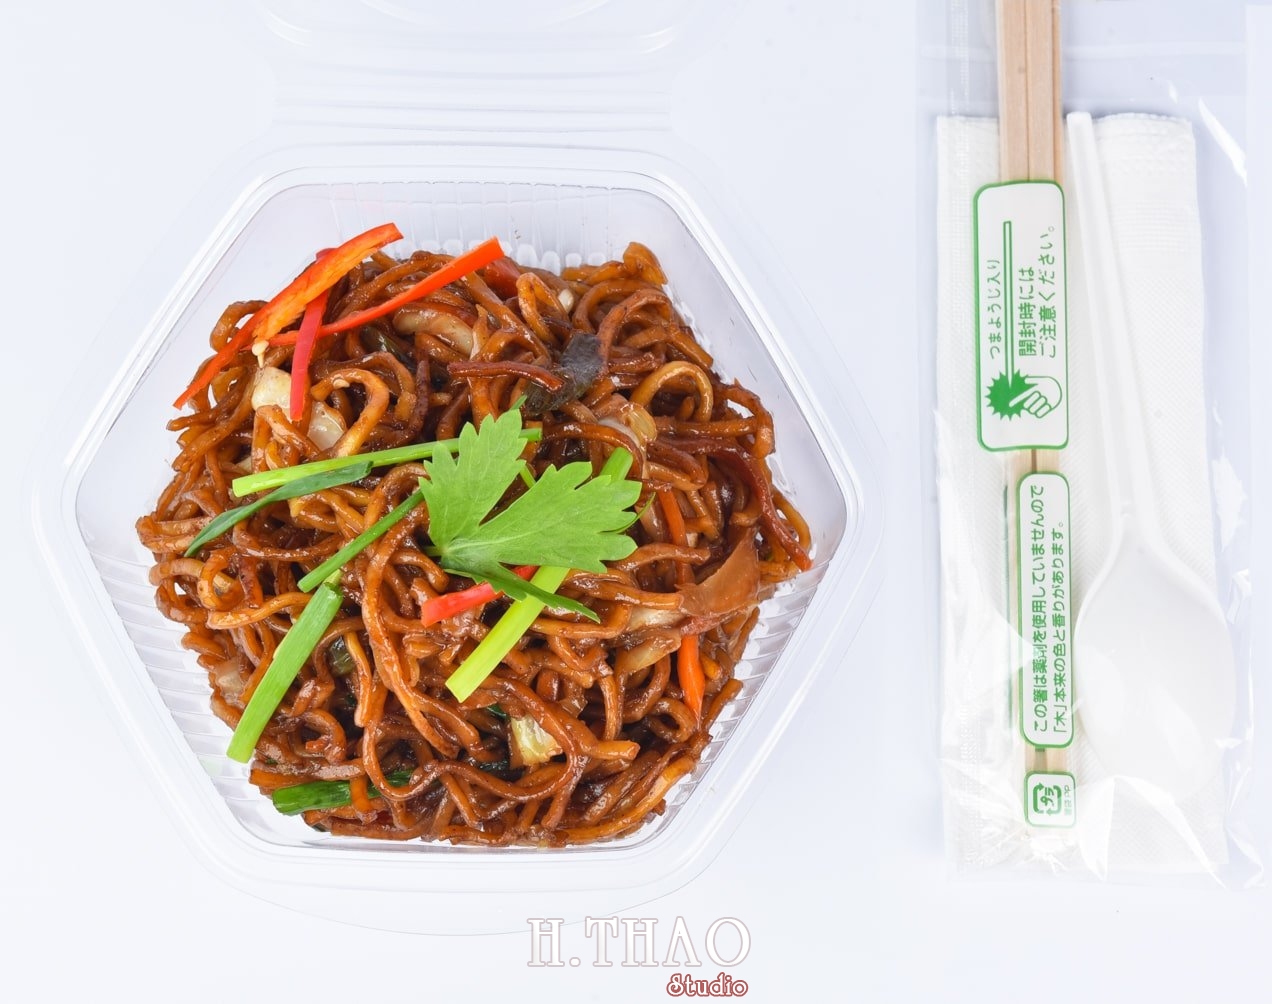 Anh food nen trang 11 min - Dịch vụ chụp ảnh đồ ăn đẹp, giá rẻ tại TpHCM - HThao Studio